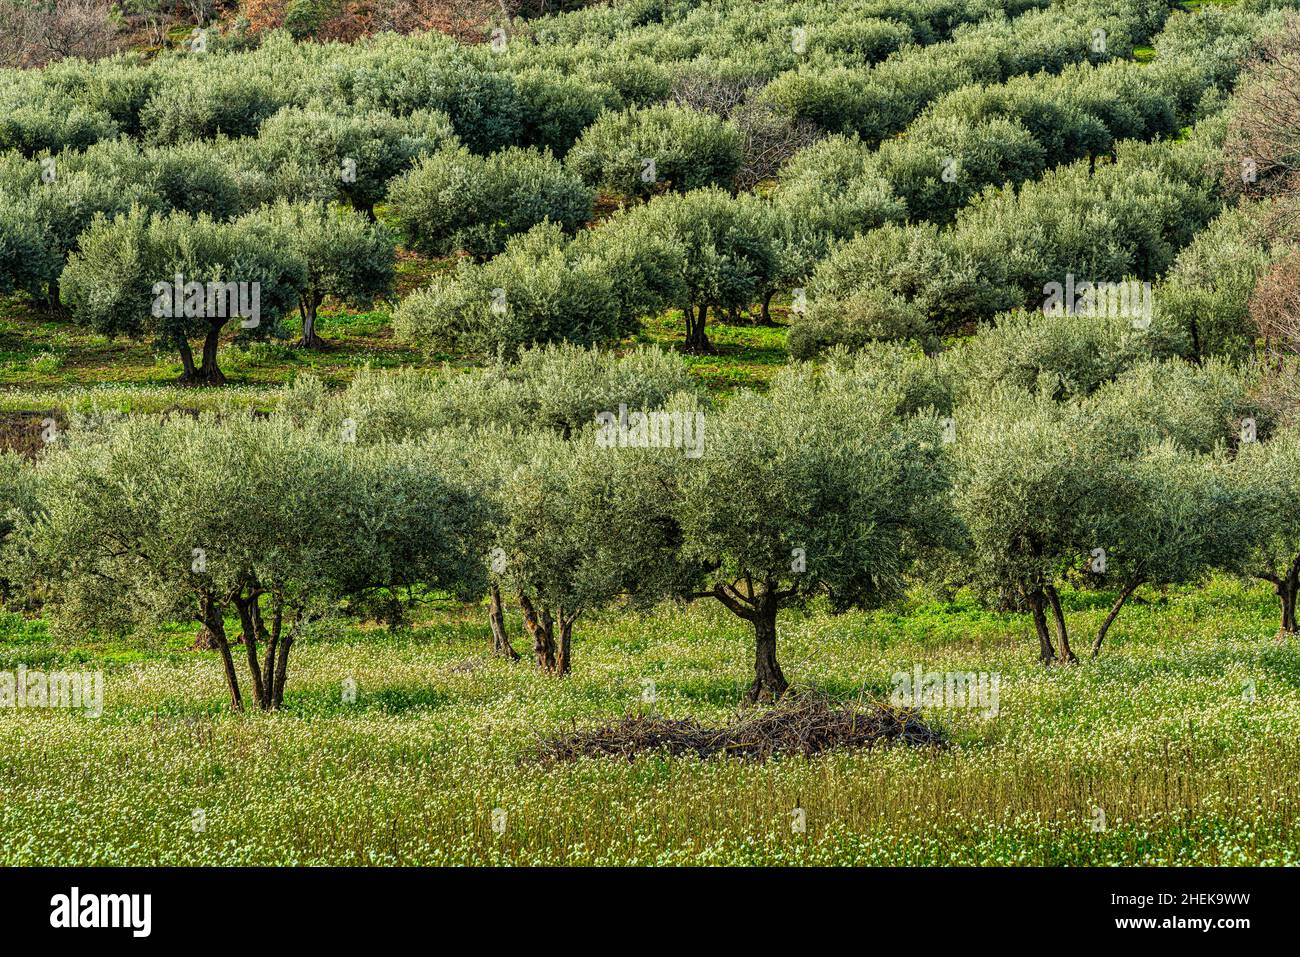 oliveraie dans la campagne des Abruzzes illuminée par la lumière d'hiver.Abruzzes, Italie, europe Banque D'Images